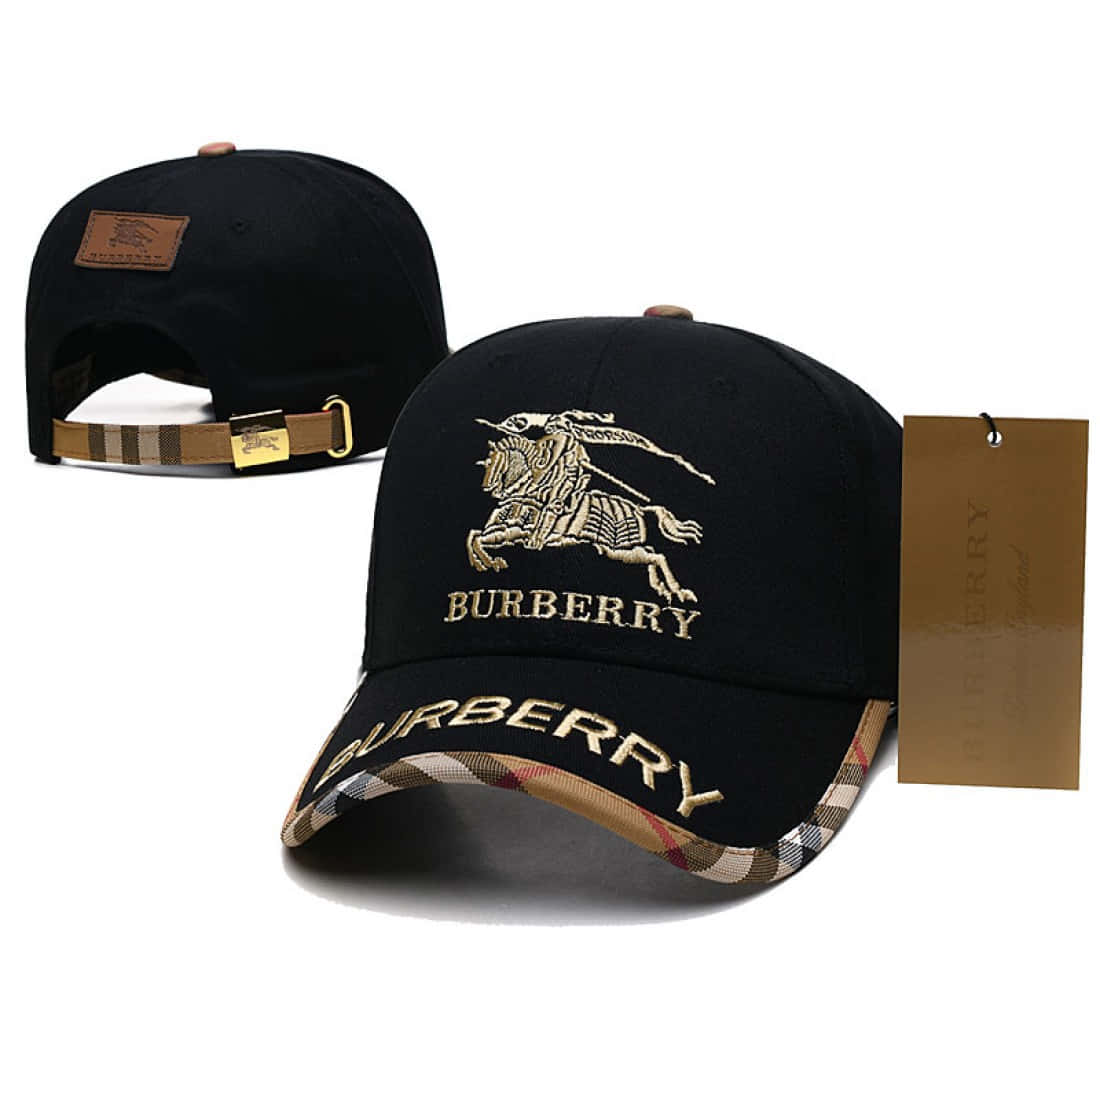 Burberrylogo-kasket Med Guldg-logo.